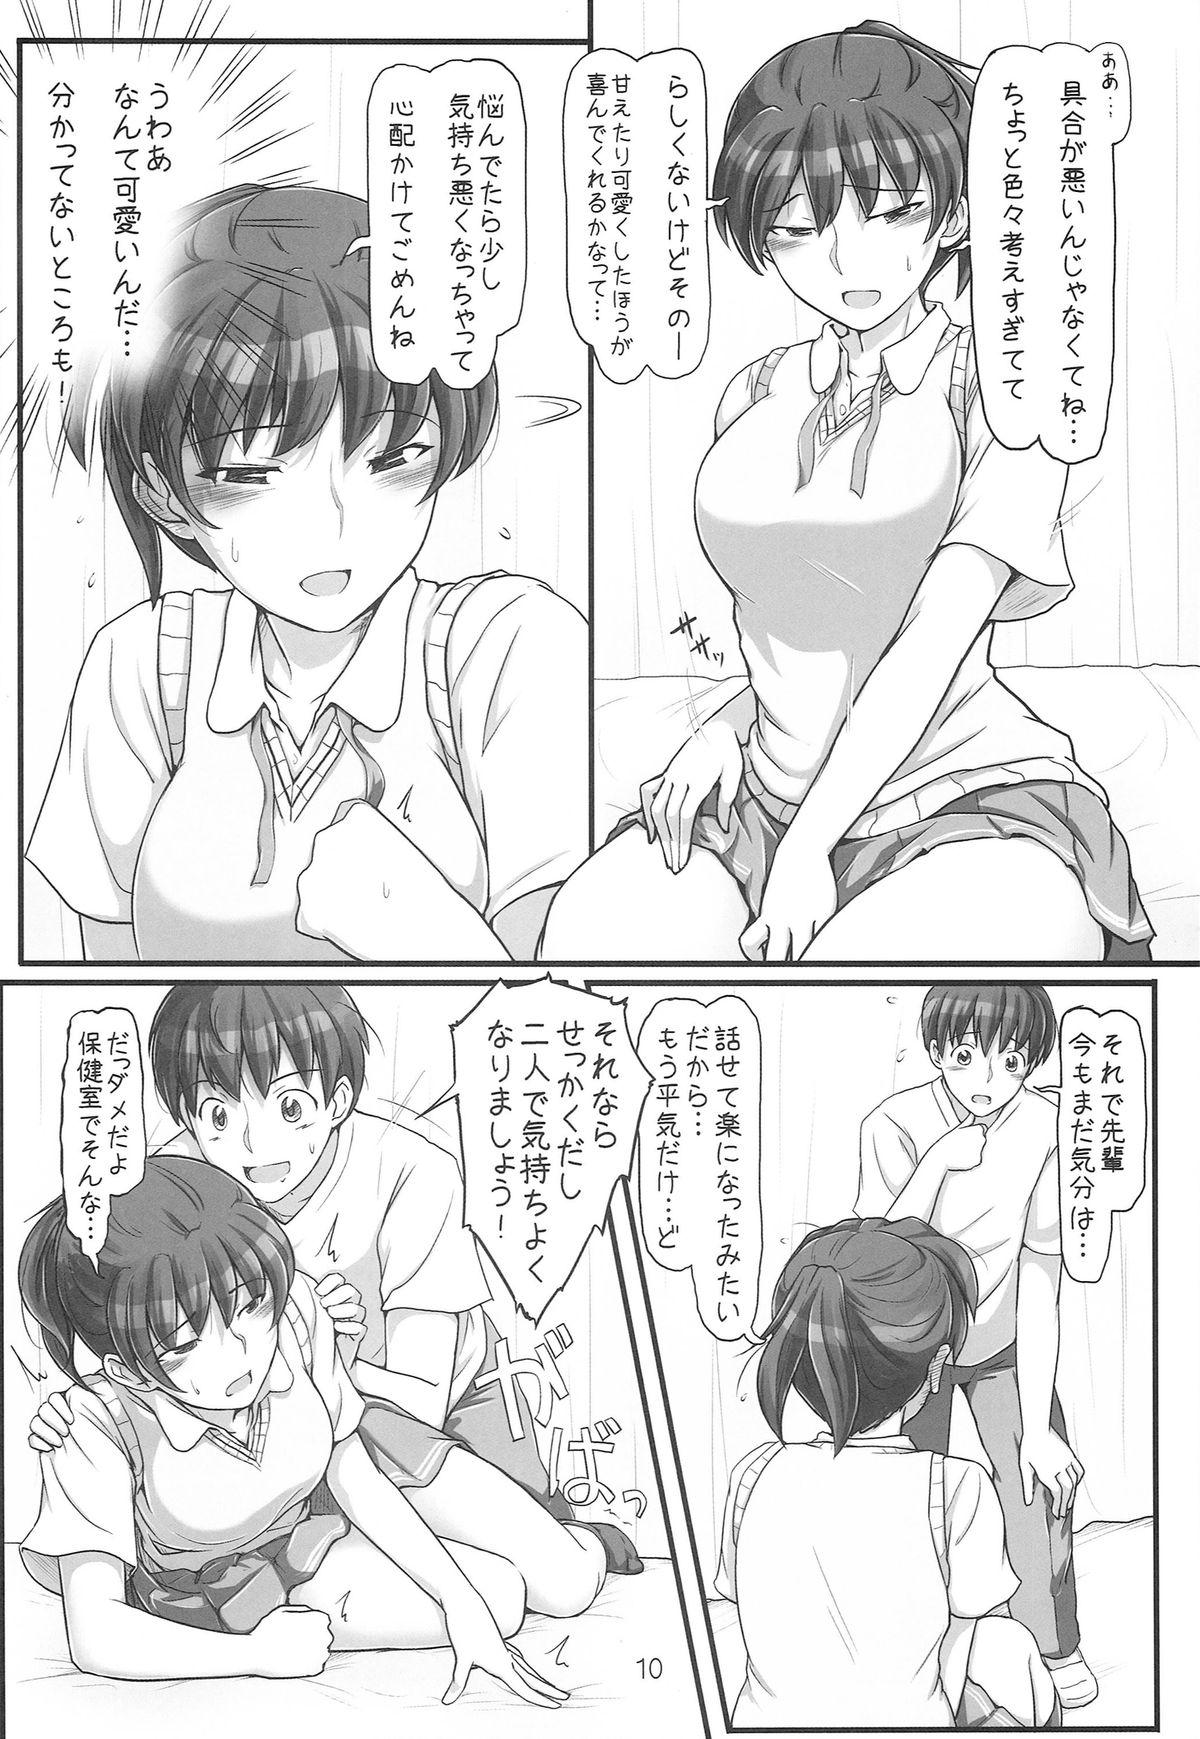 Spanking sweet training - Amagami Abuse - Page 10